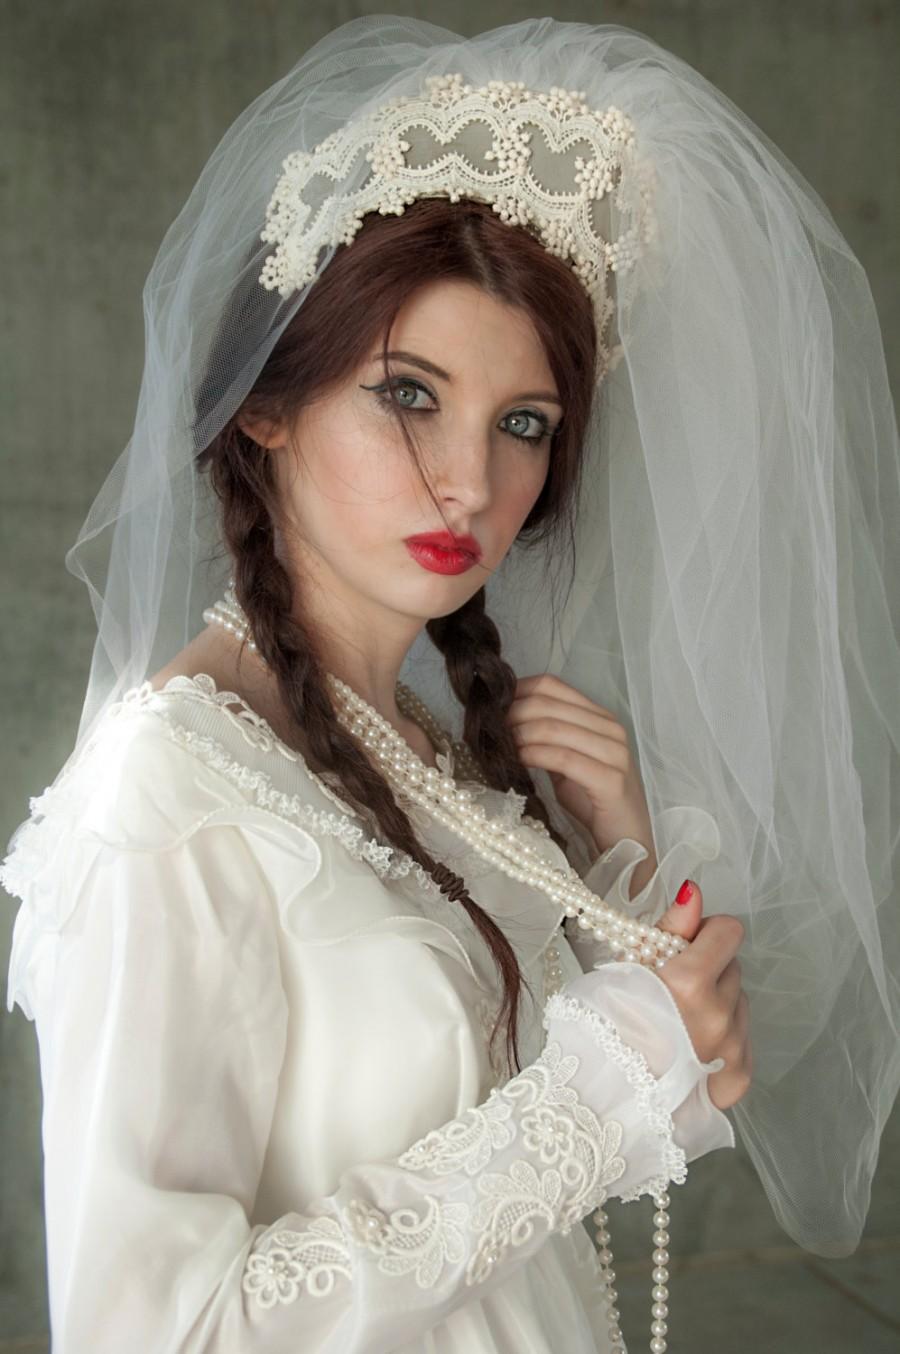 زفاف - Tall wedding veil, white tulle Renaissance-style medieval bridal crown headpiece, 1960s